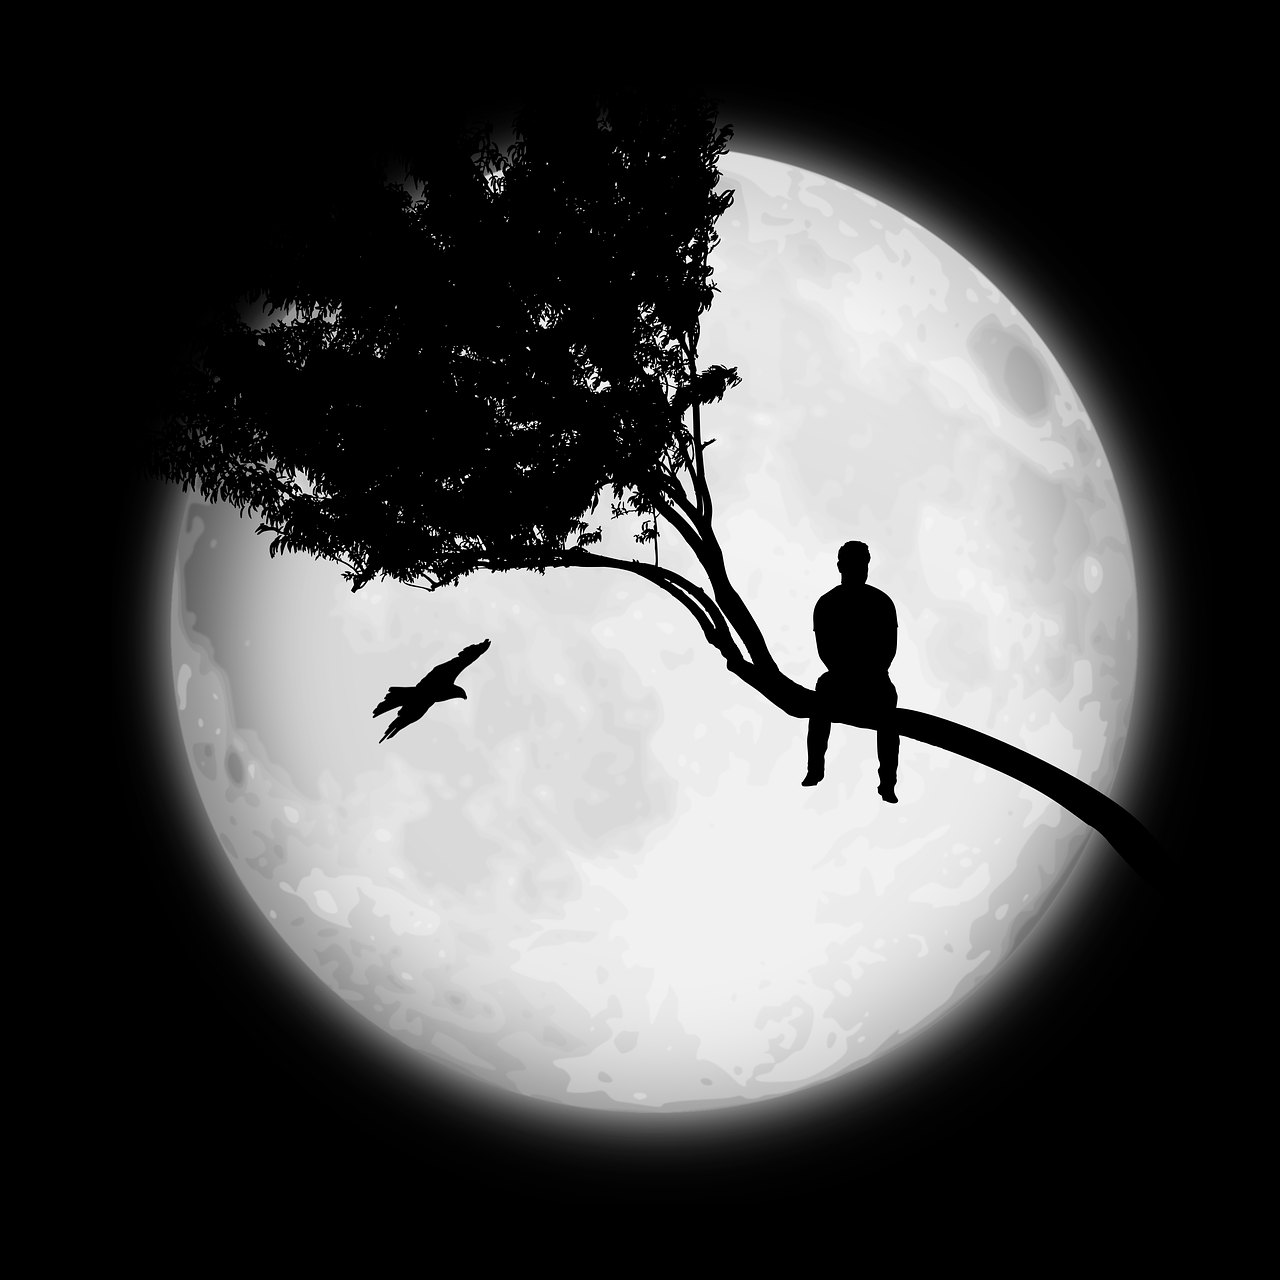 Imagen gratis en Pixabay Hombre Árbol Solo. Moon photography Moon art Night sky photo